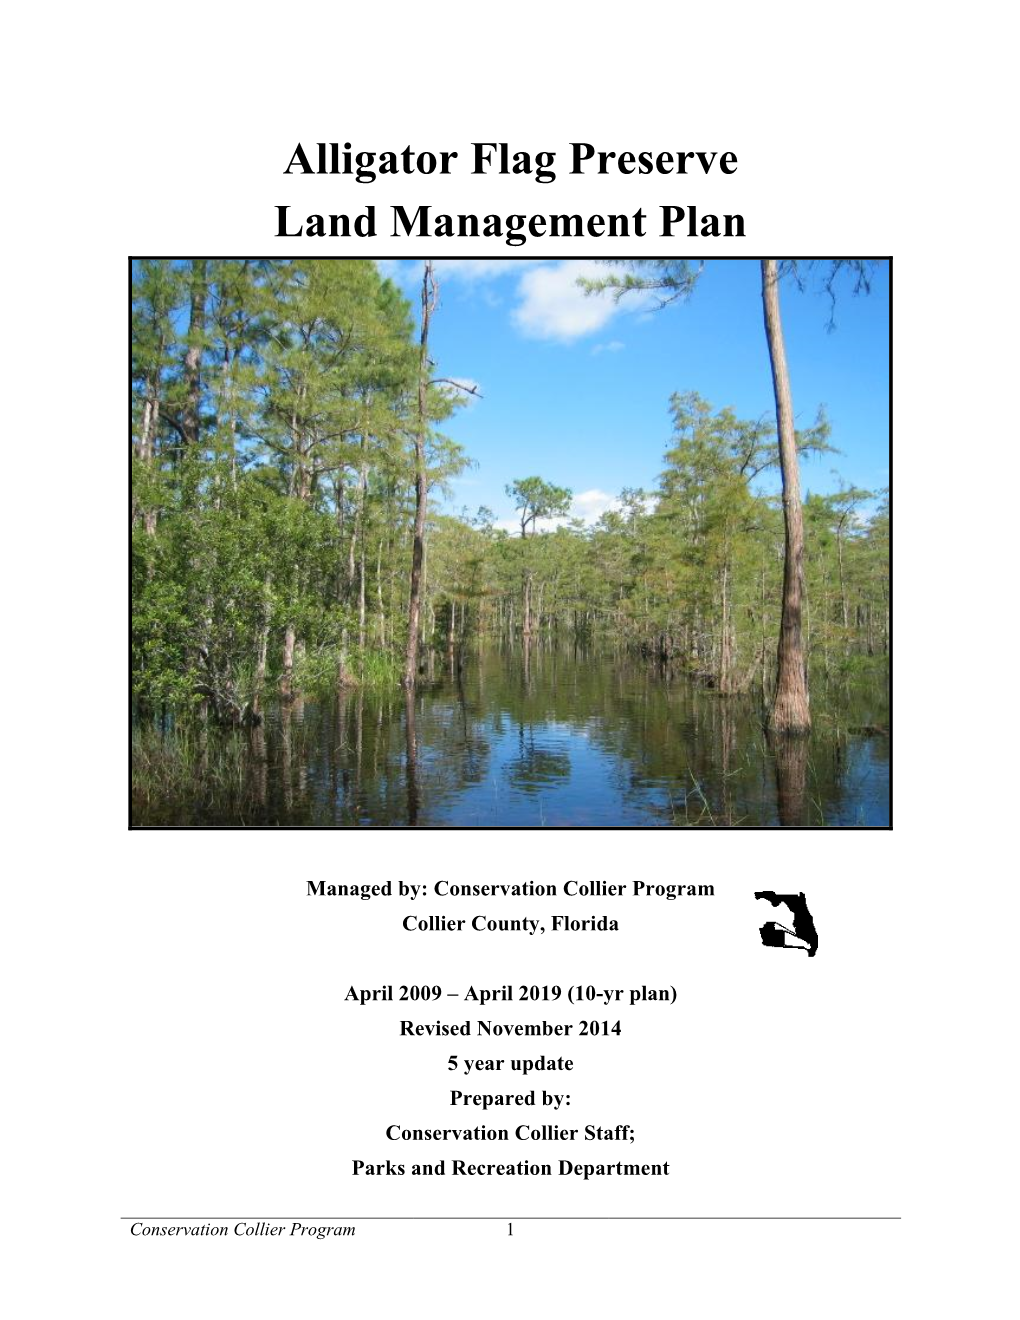 Alligator Flag Preserve Land Management Plan